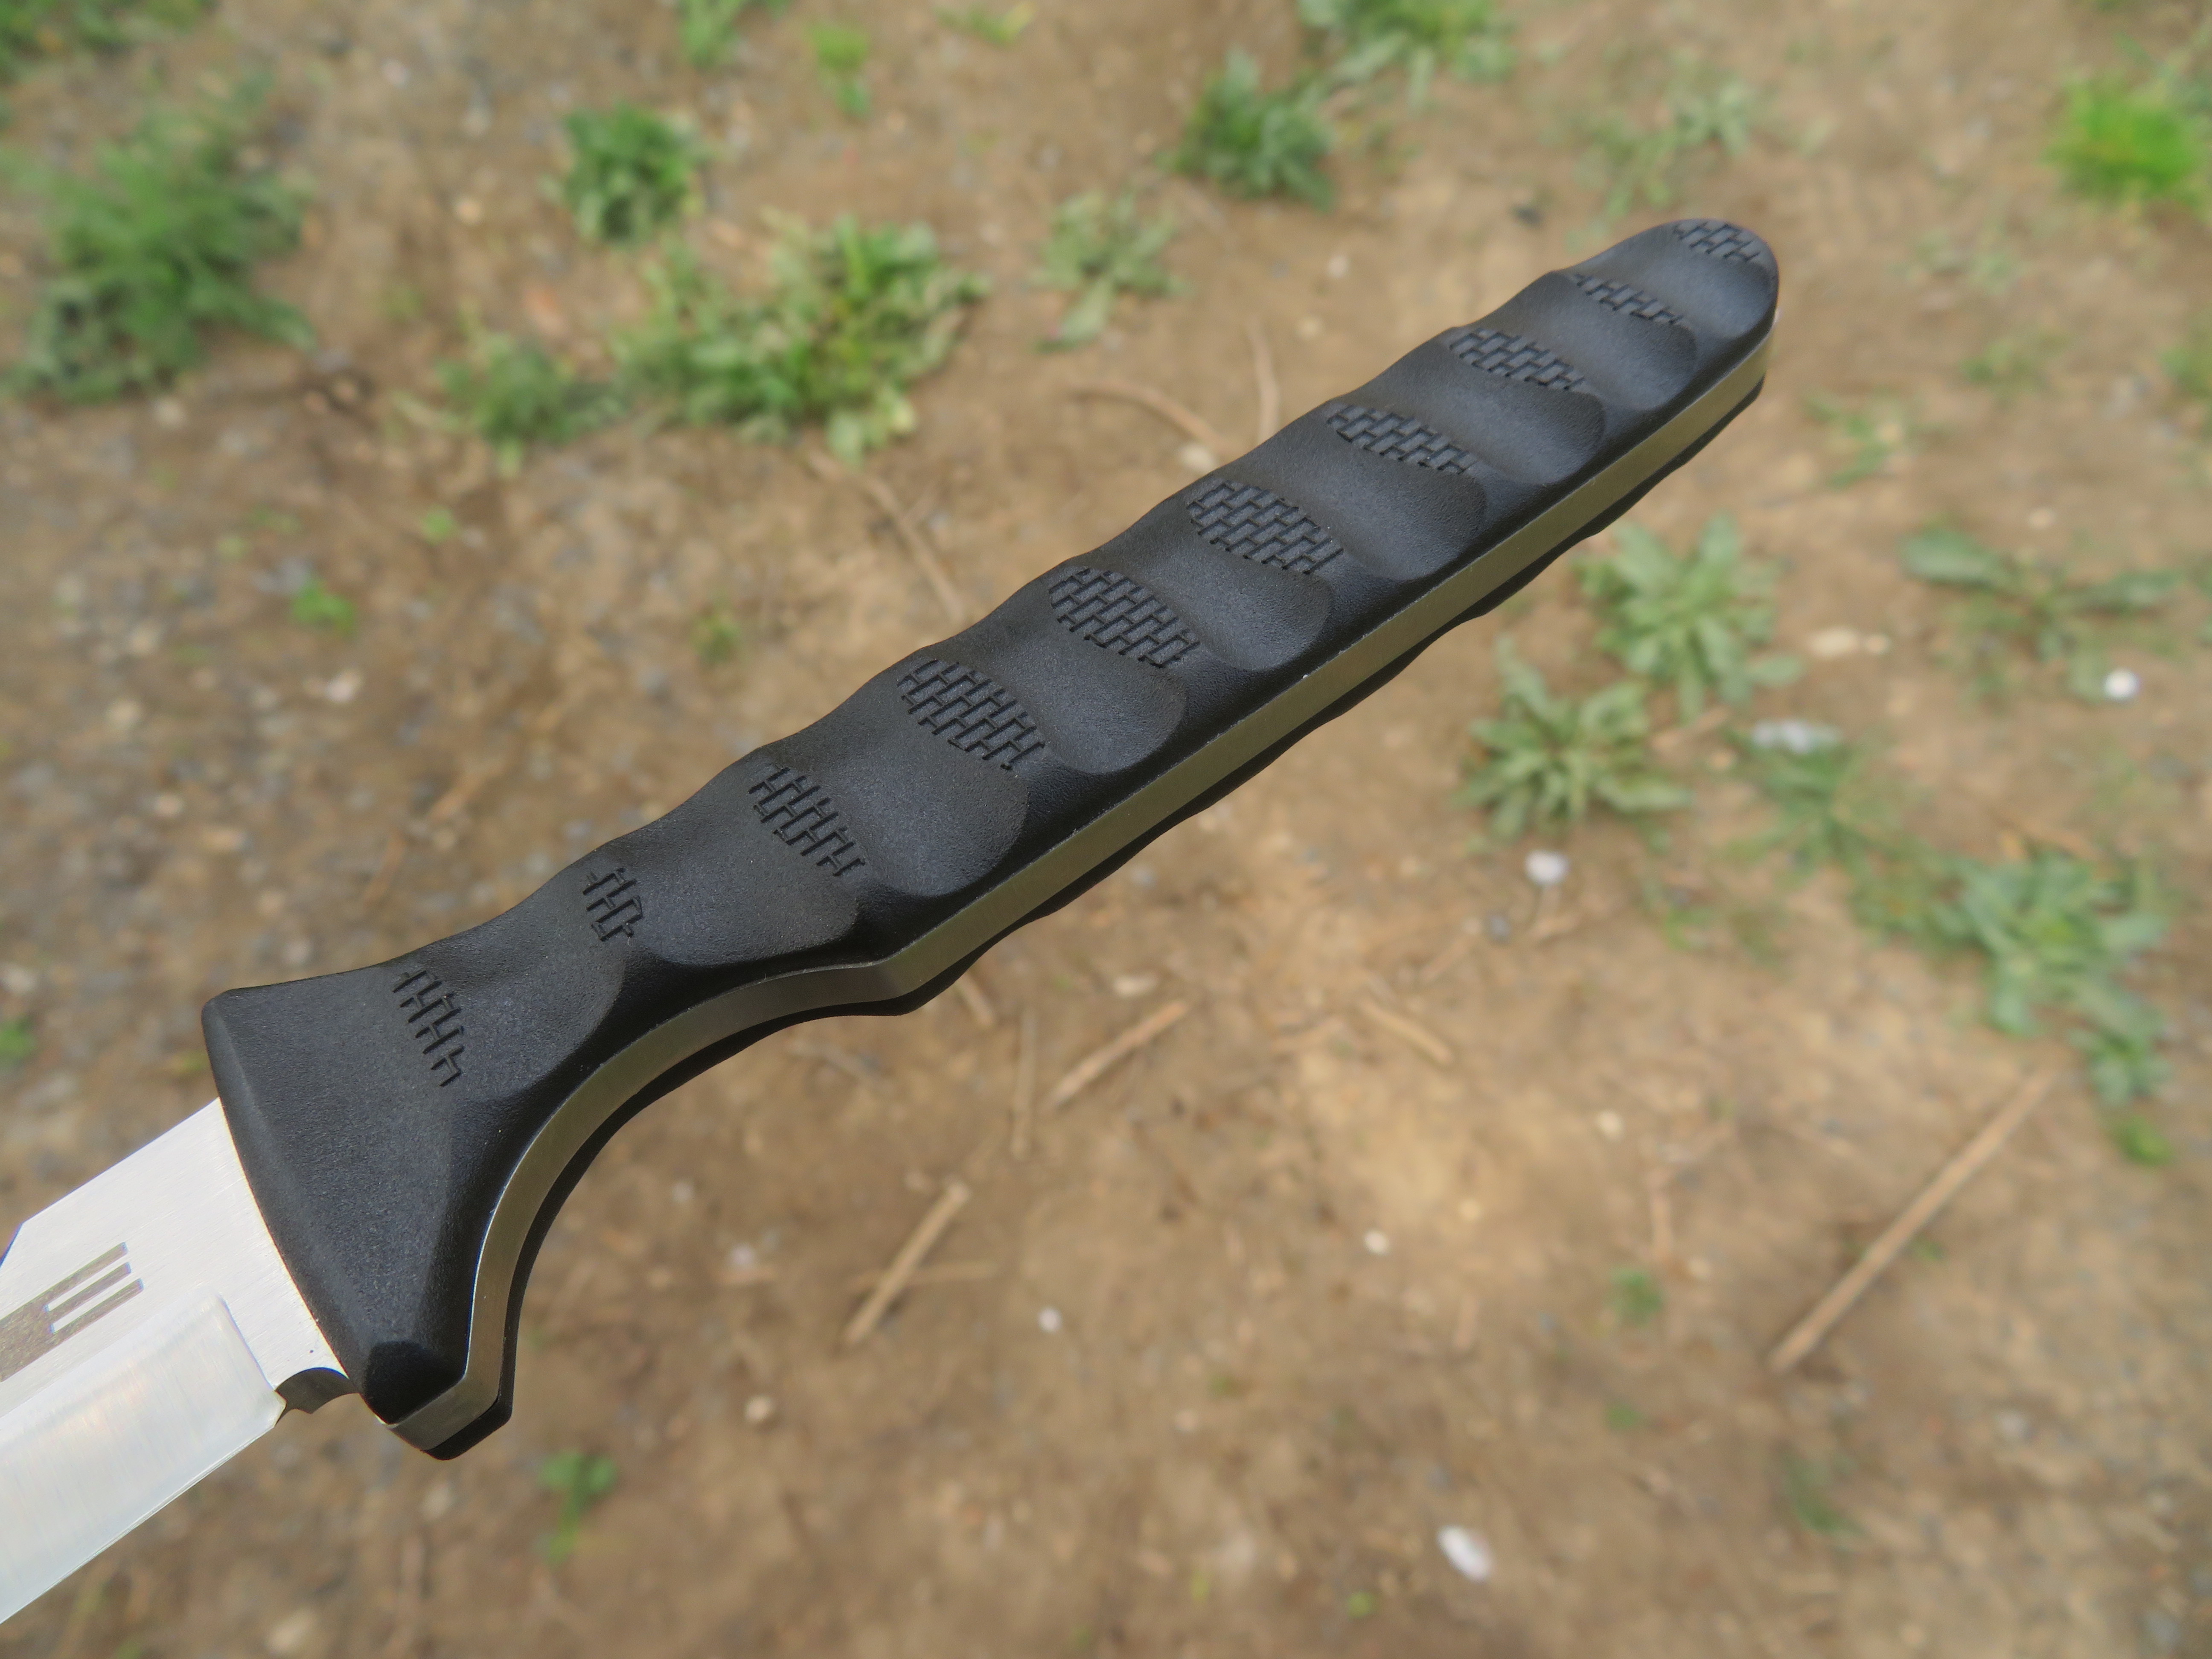 Rukojeť nože Spike od společnosti Cold Steel je vyrobena z materiálu G-10.